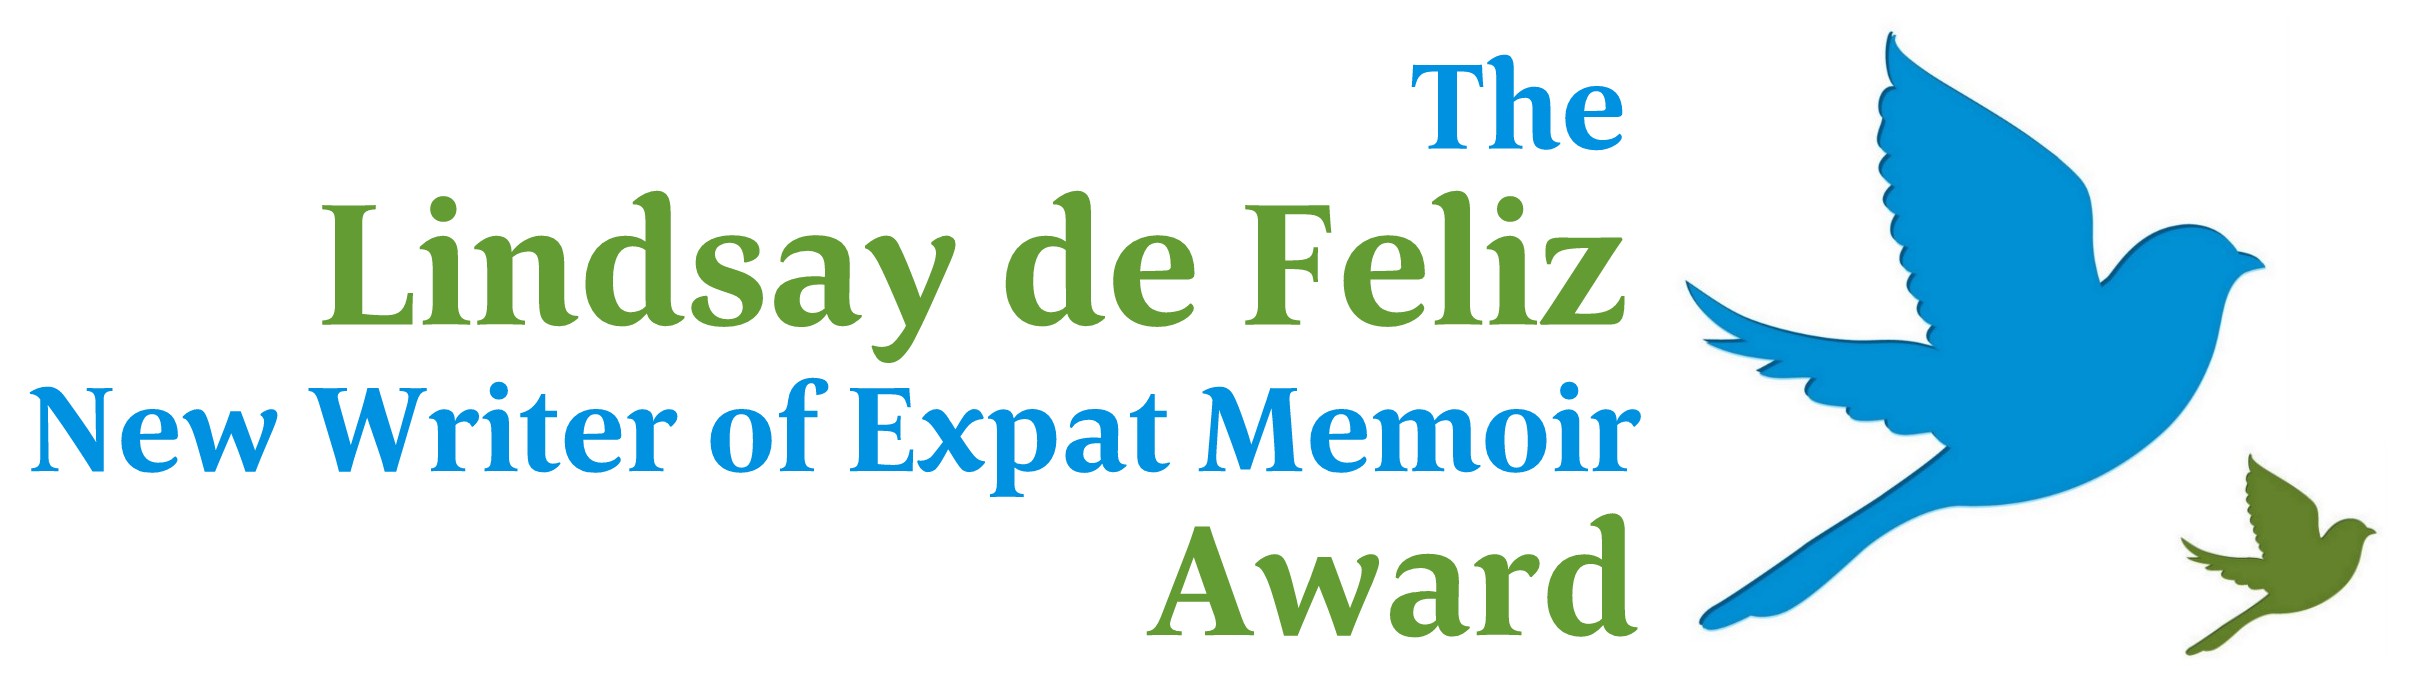 The Lindsay de Feliz Award